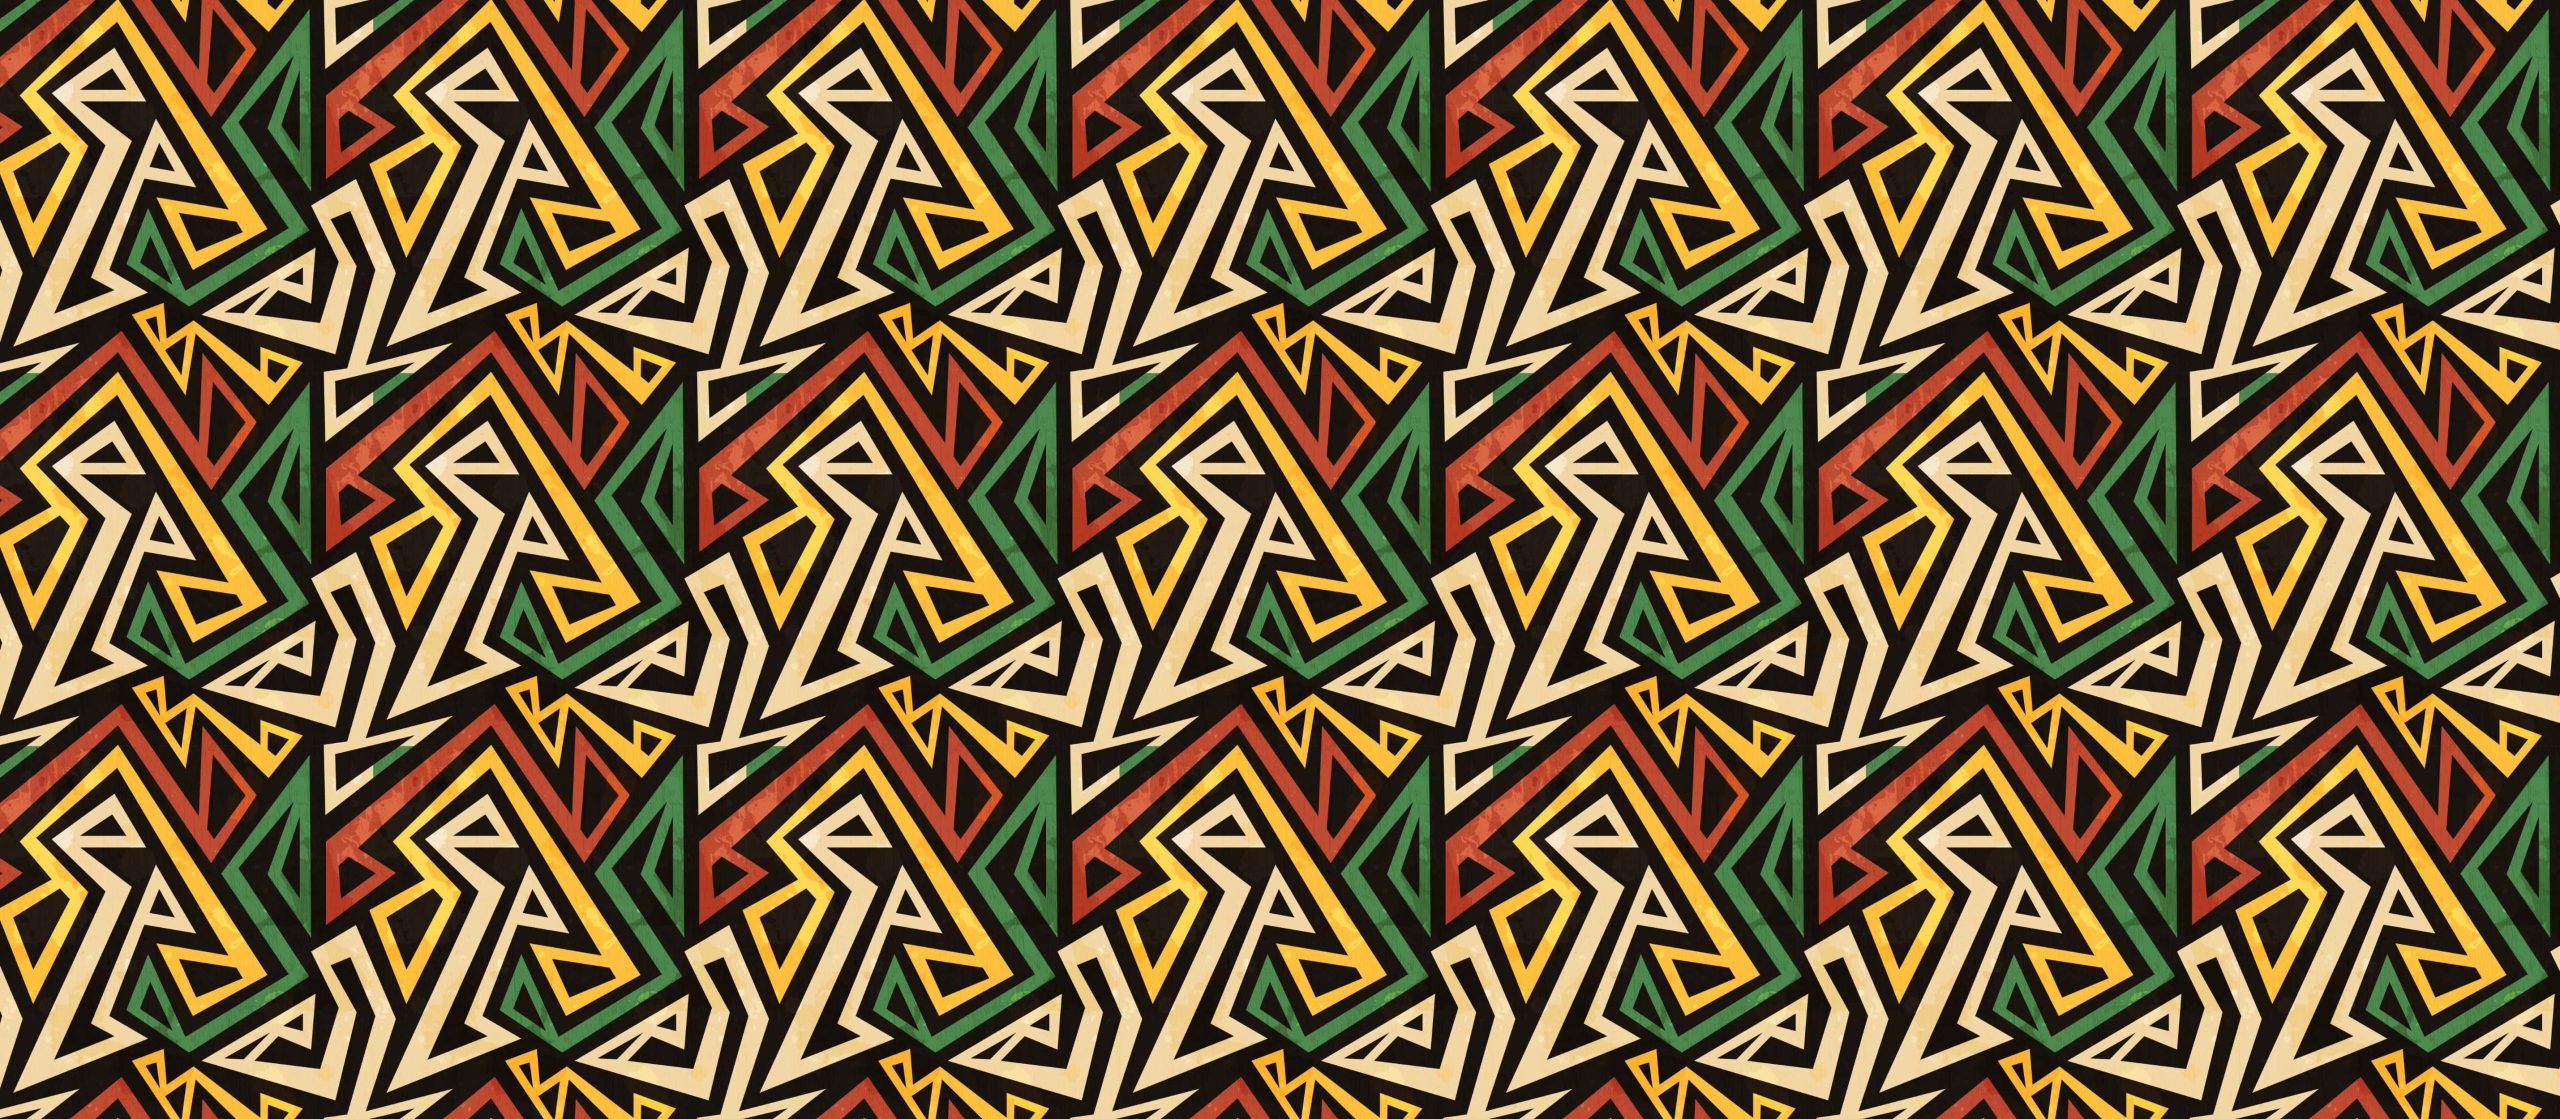 Repeat pattern Wallpaper